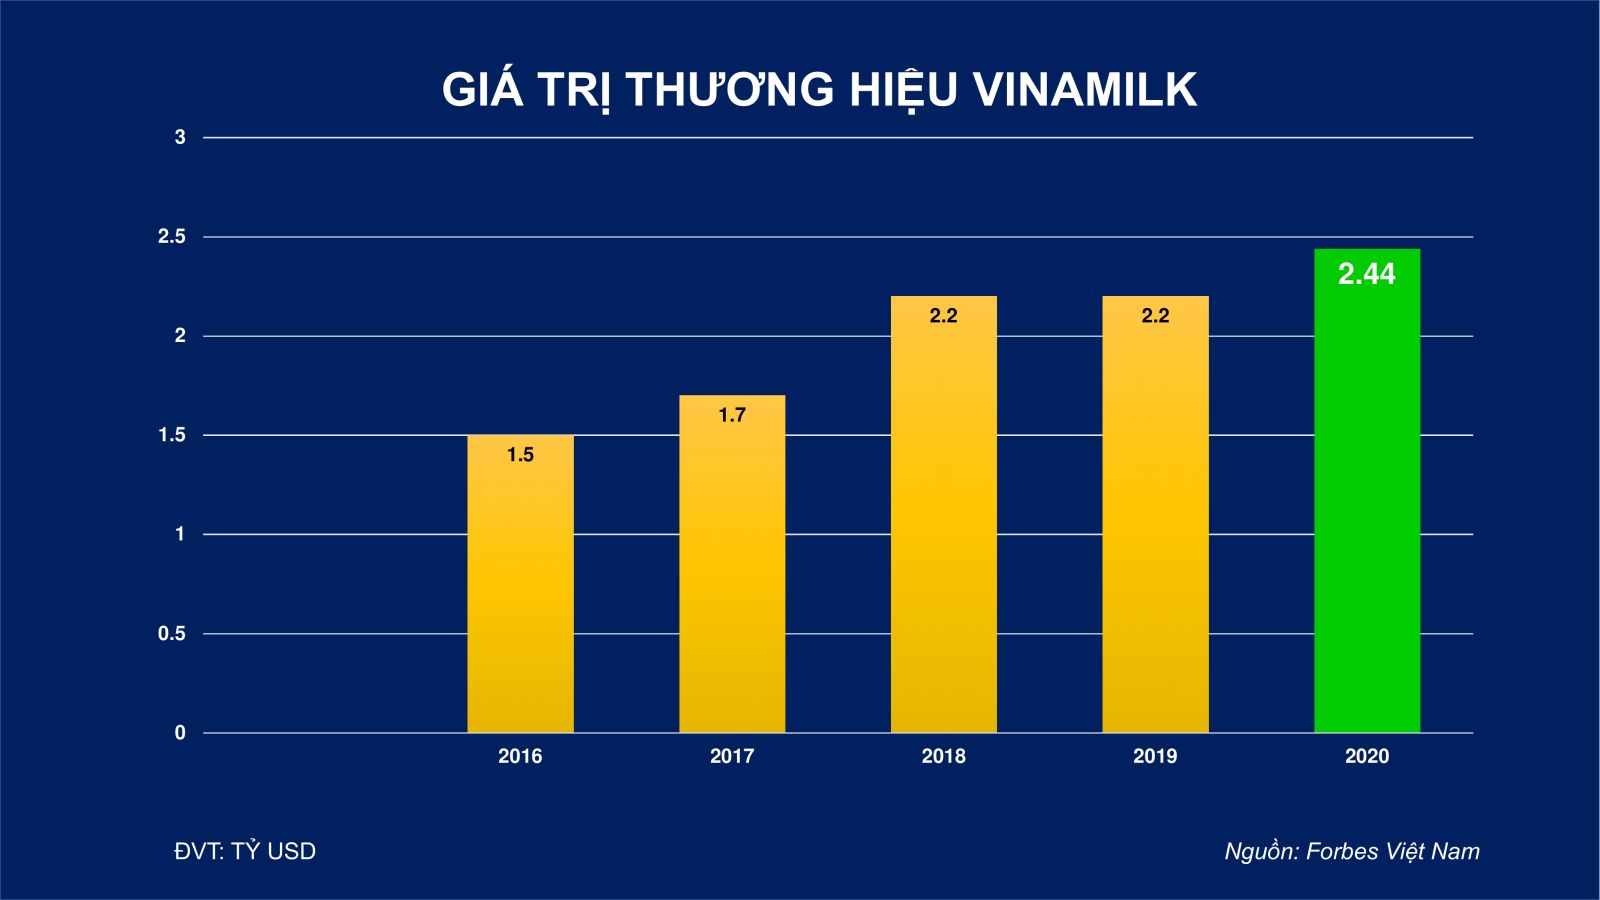 Giá trị thương hiệu Vinamilk được định giá hơn 2,4 tỷ USD, chiếm 20% tổng giá trị của 50 thương hiệu dẫn đầu Việt Nam 2020